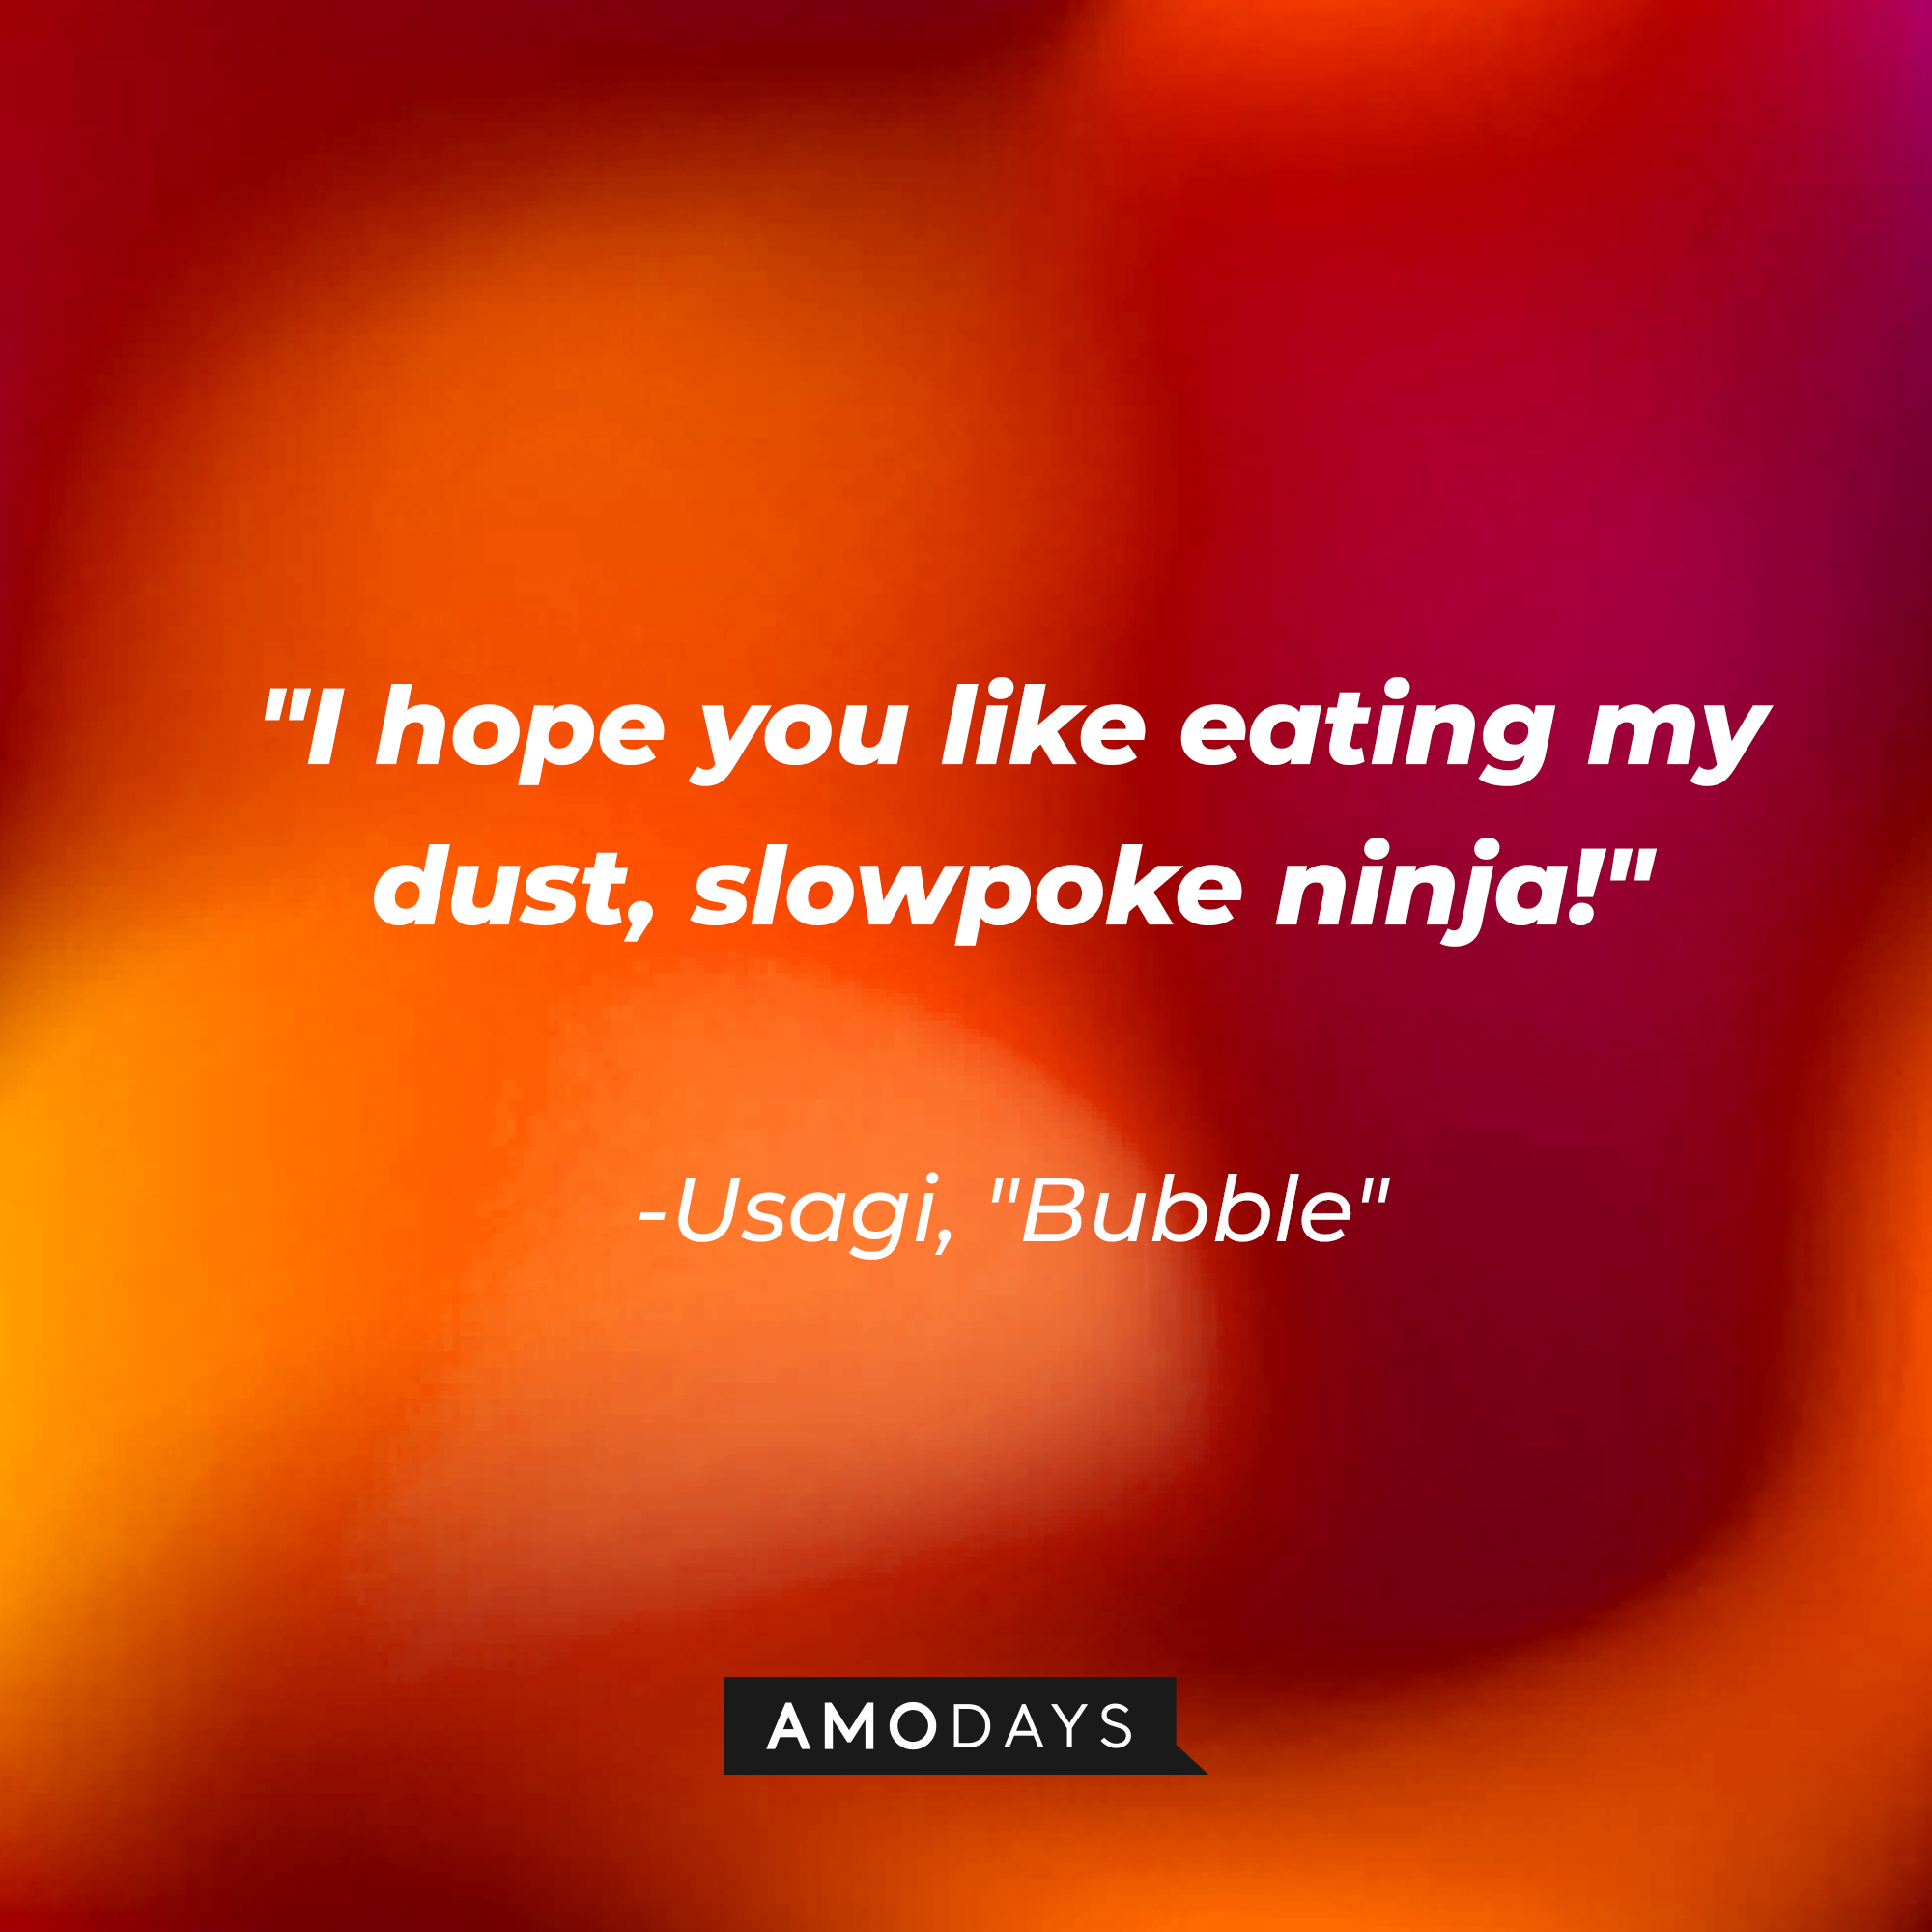 Usagi's quote on "Bubble:" "I hope you like eating my dust, slowpoke ninja!" | Source: AmoDays